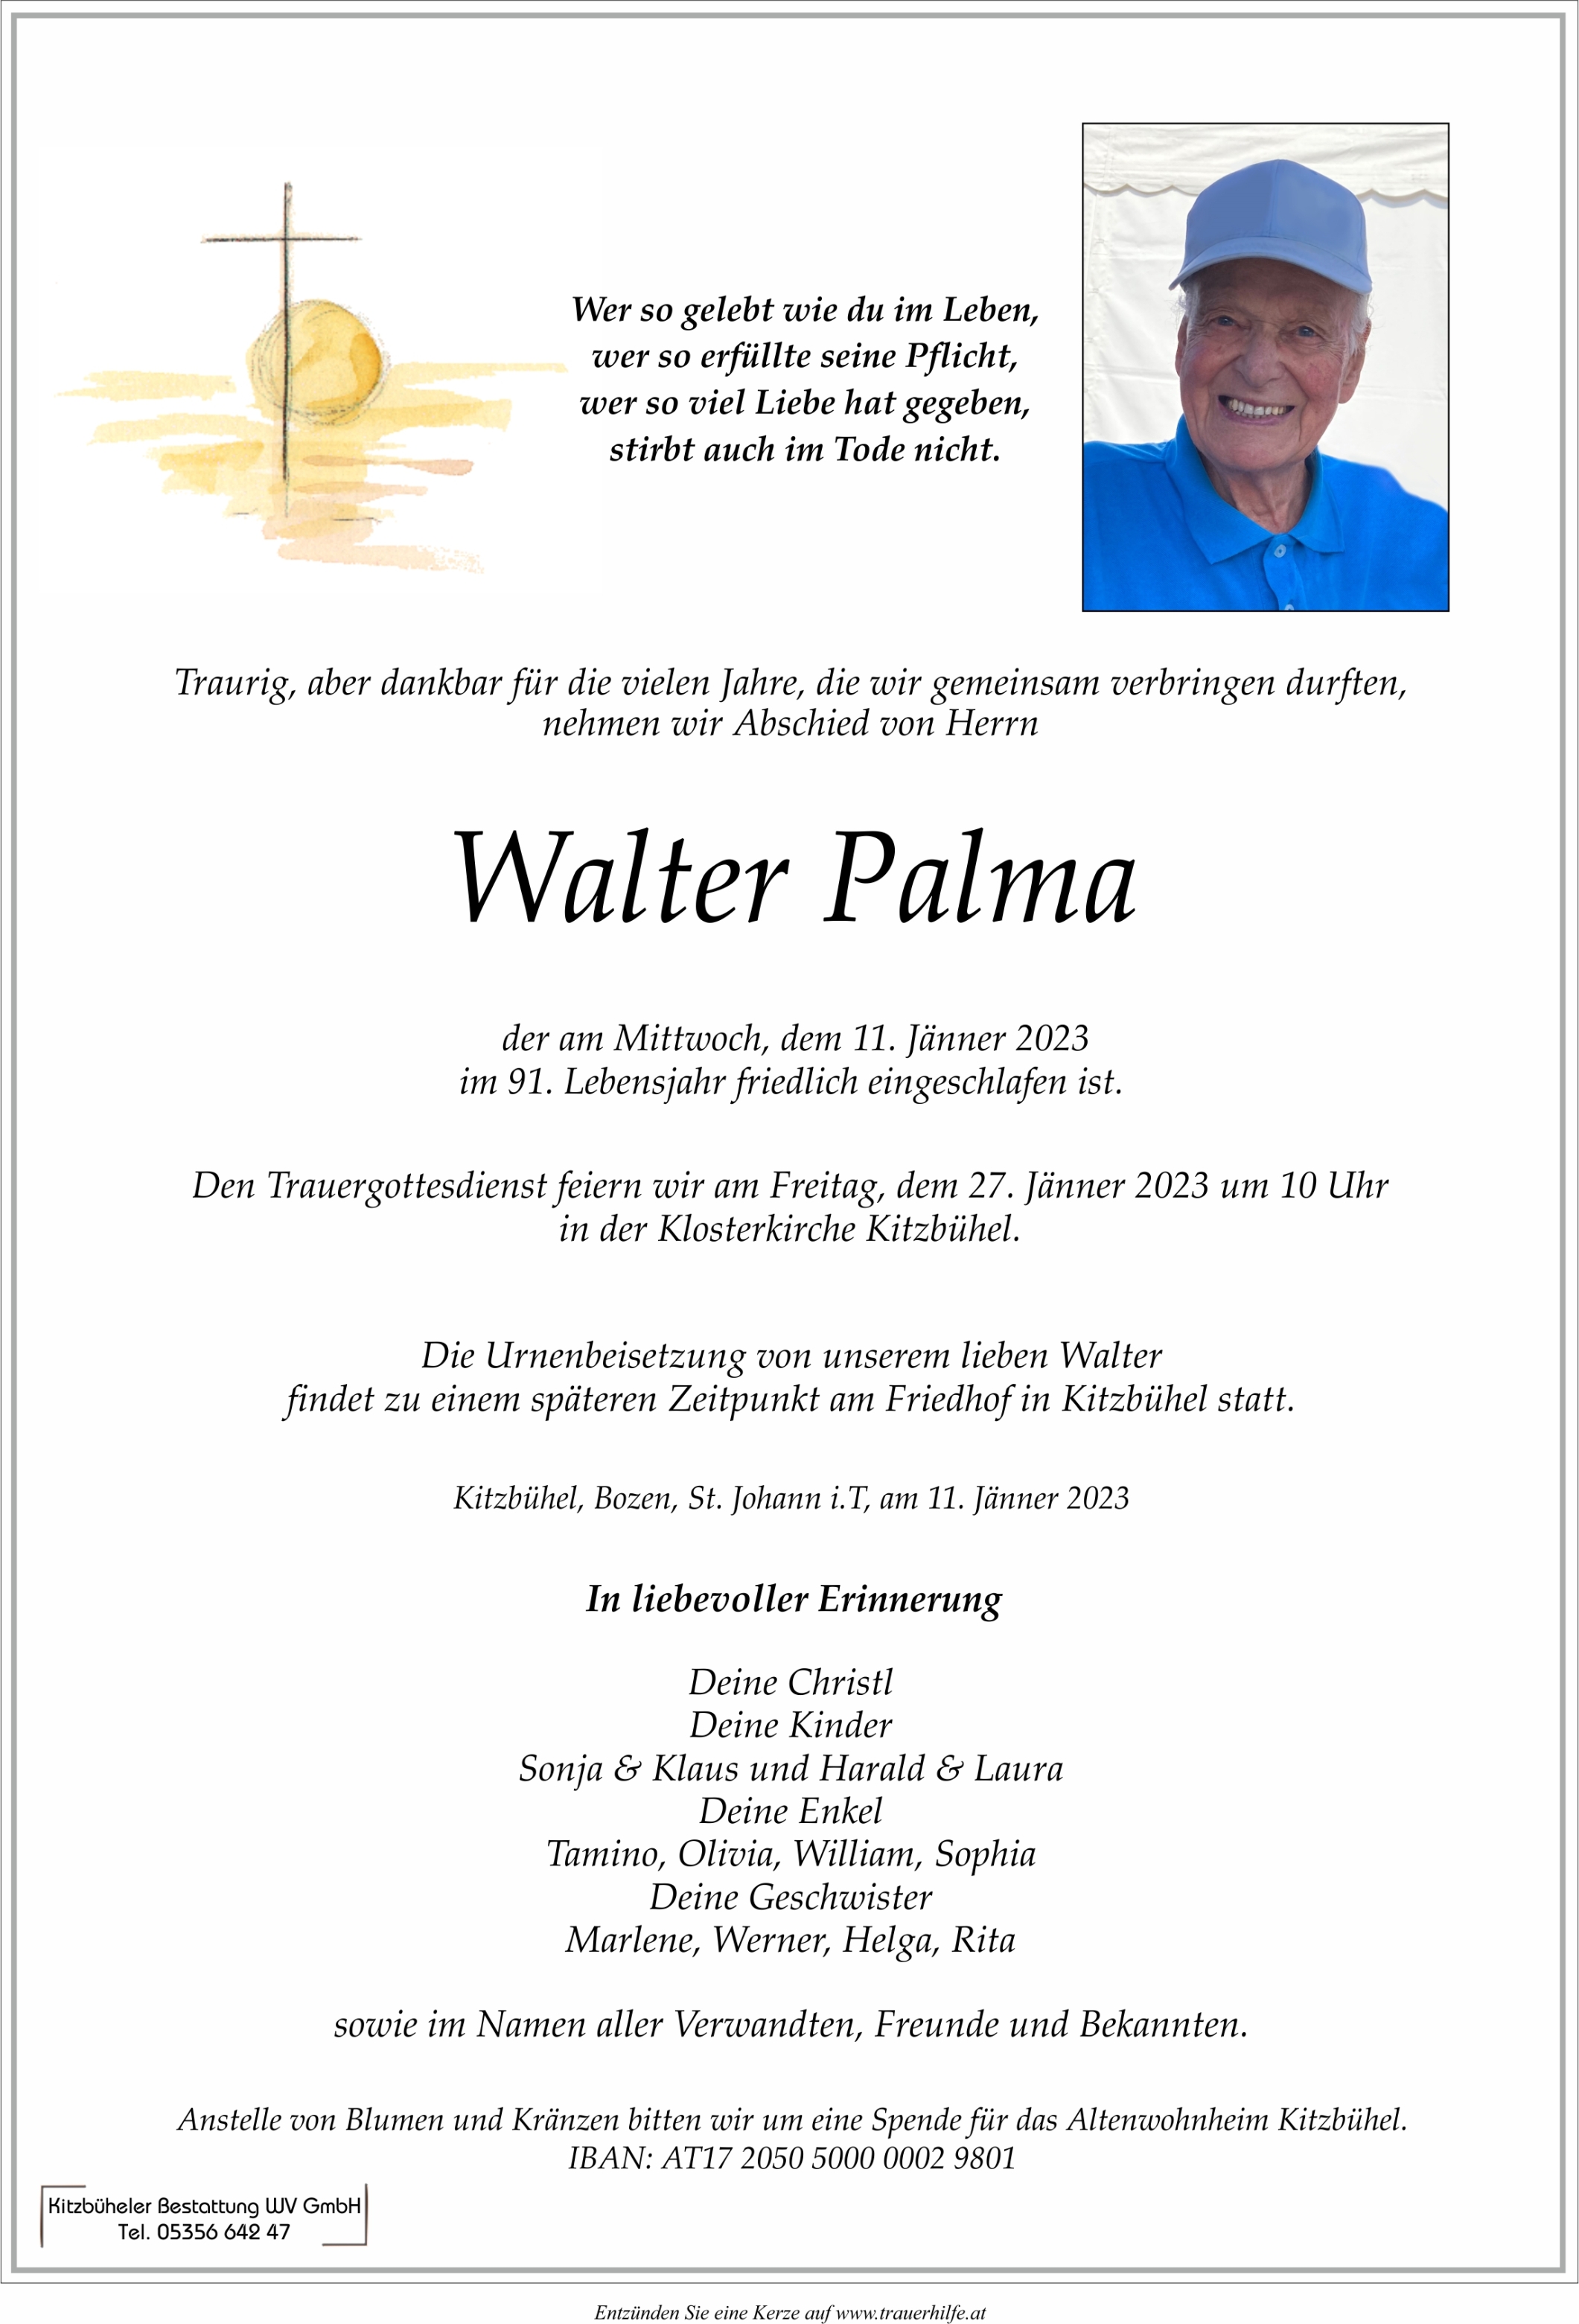 Walter Palma